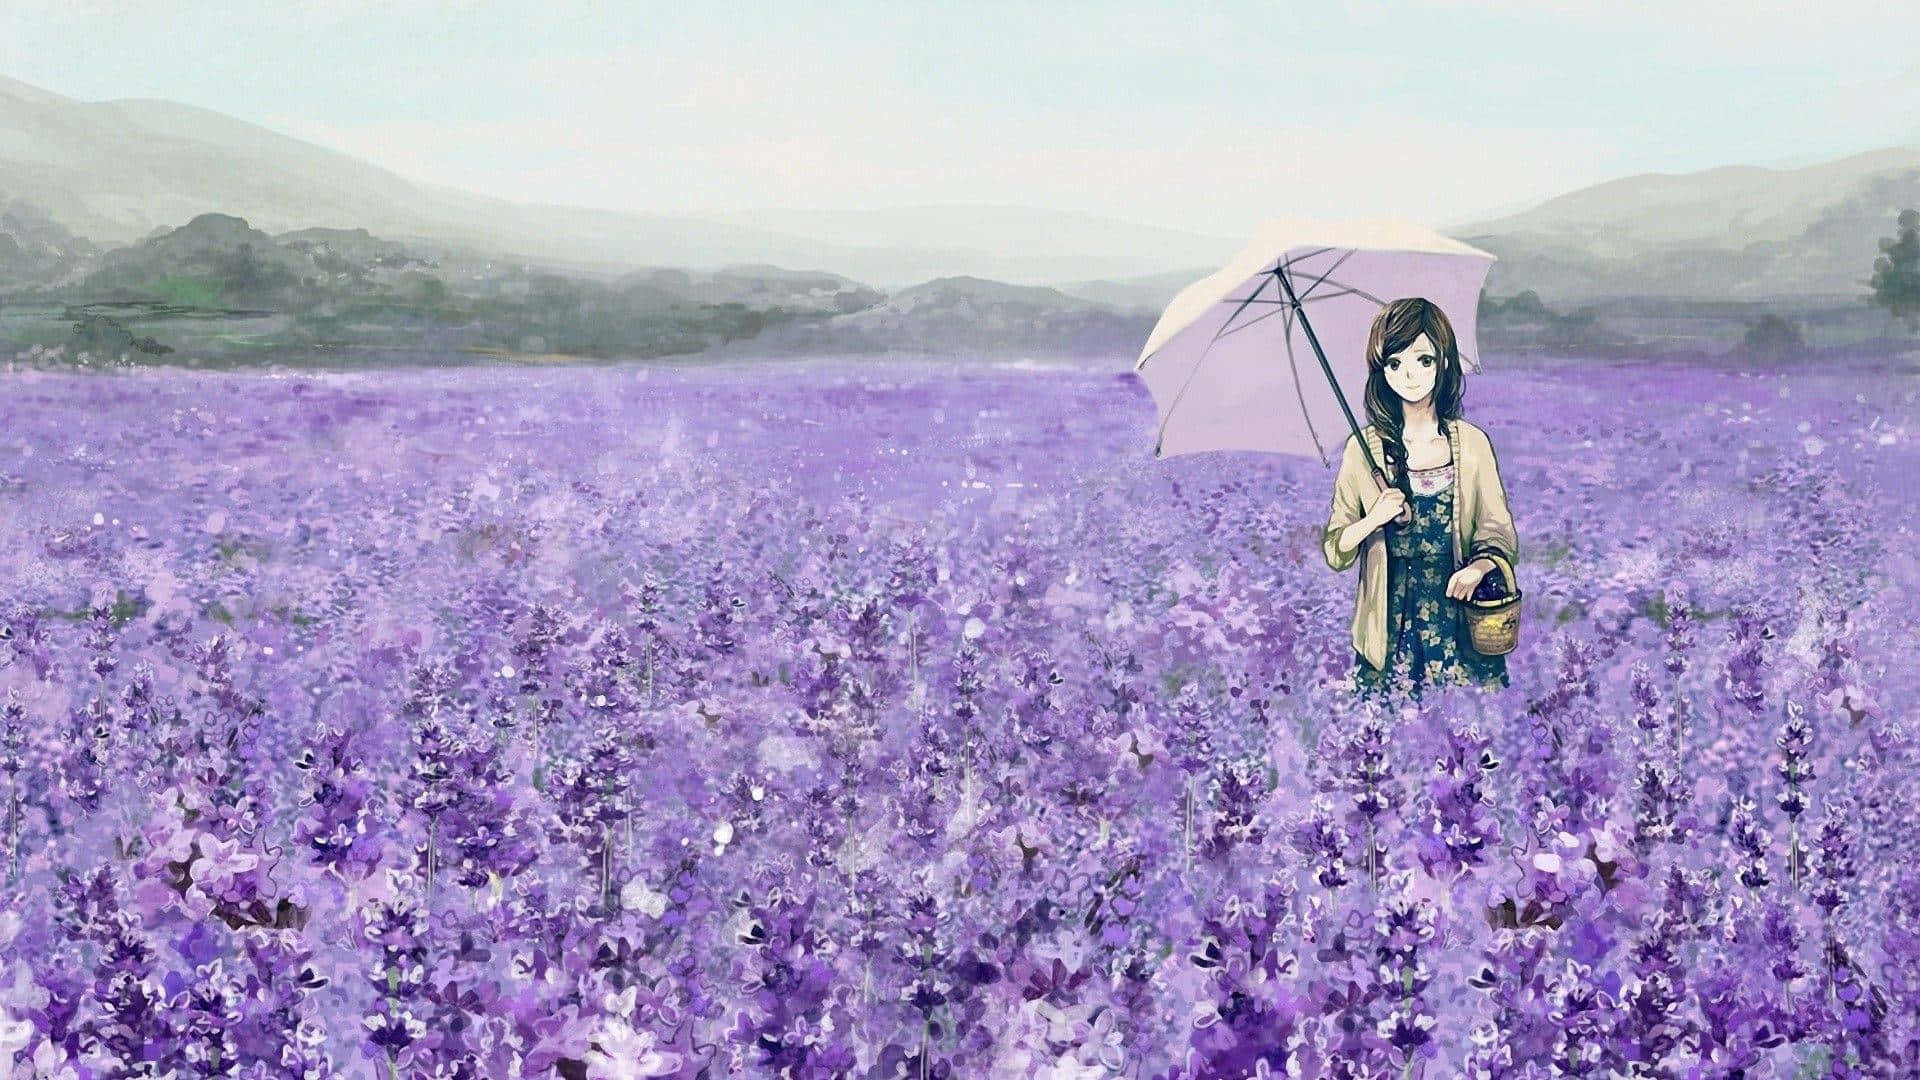 Pretty Purple Field Of Lavender Background